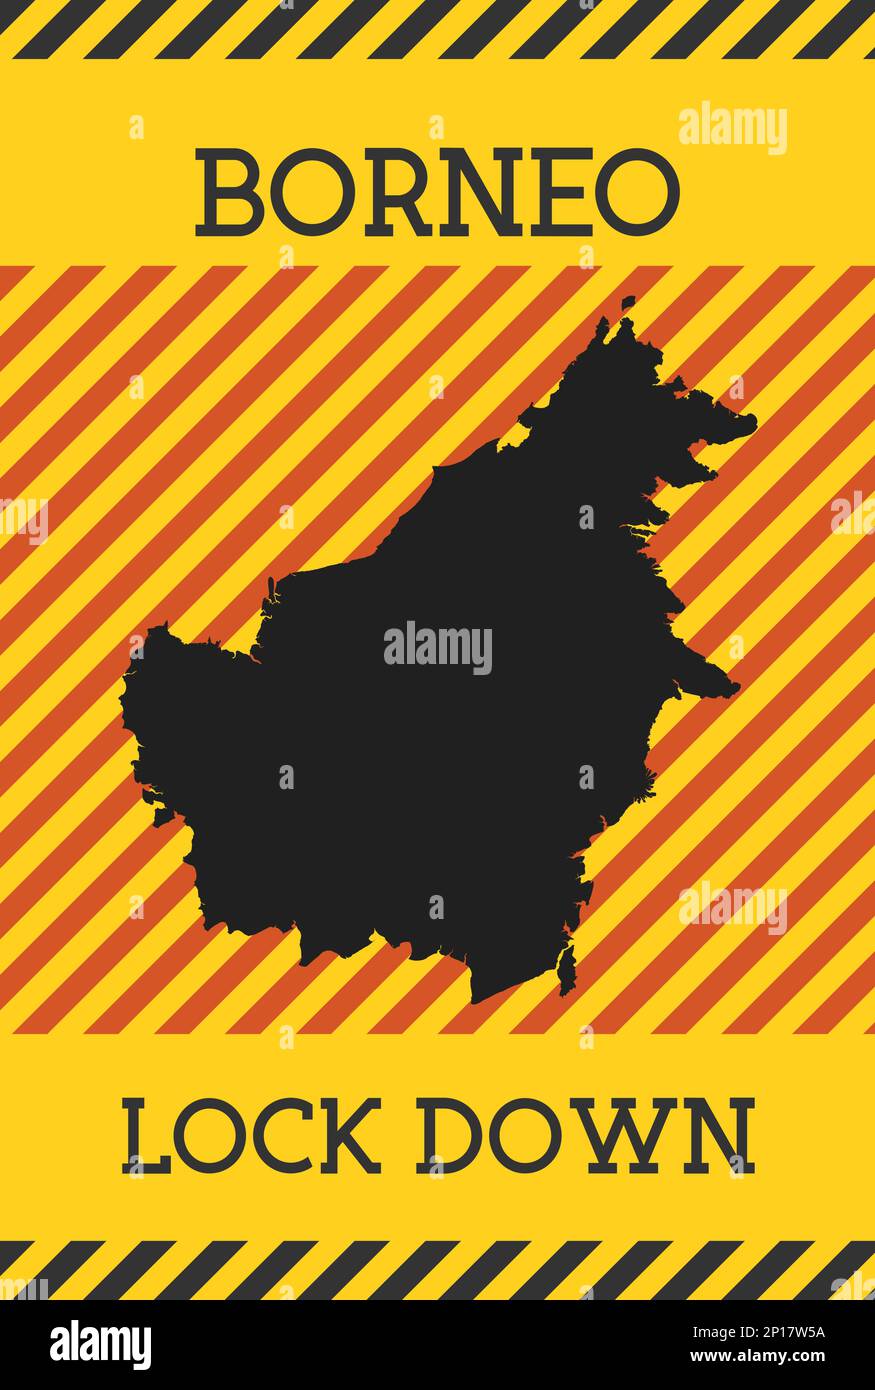 Cartello Borneo Lock Down. Icona gialla di pericolo pandemico dell'isola. Illustrazione vettoriale. Illustrazione Vettoriale